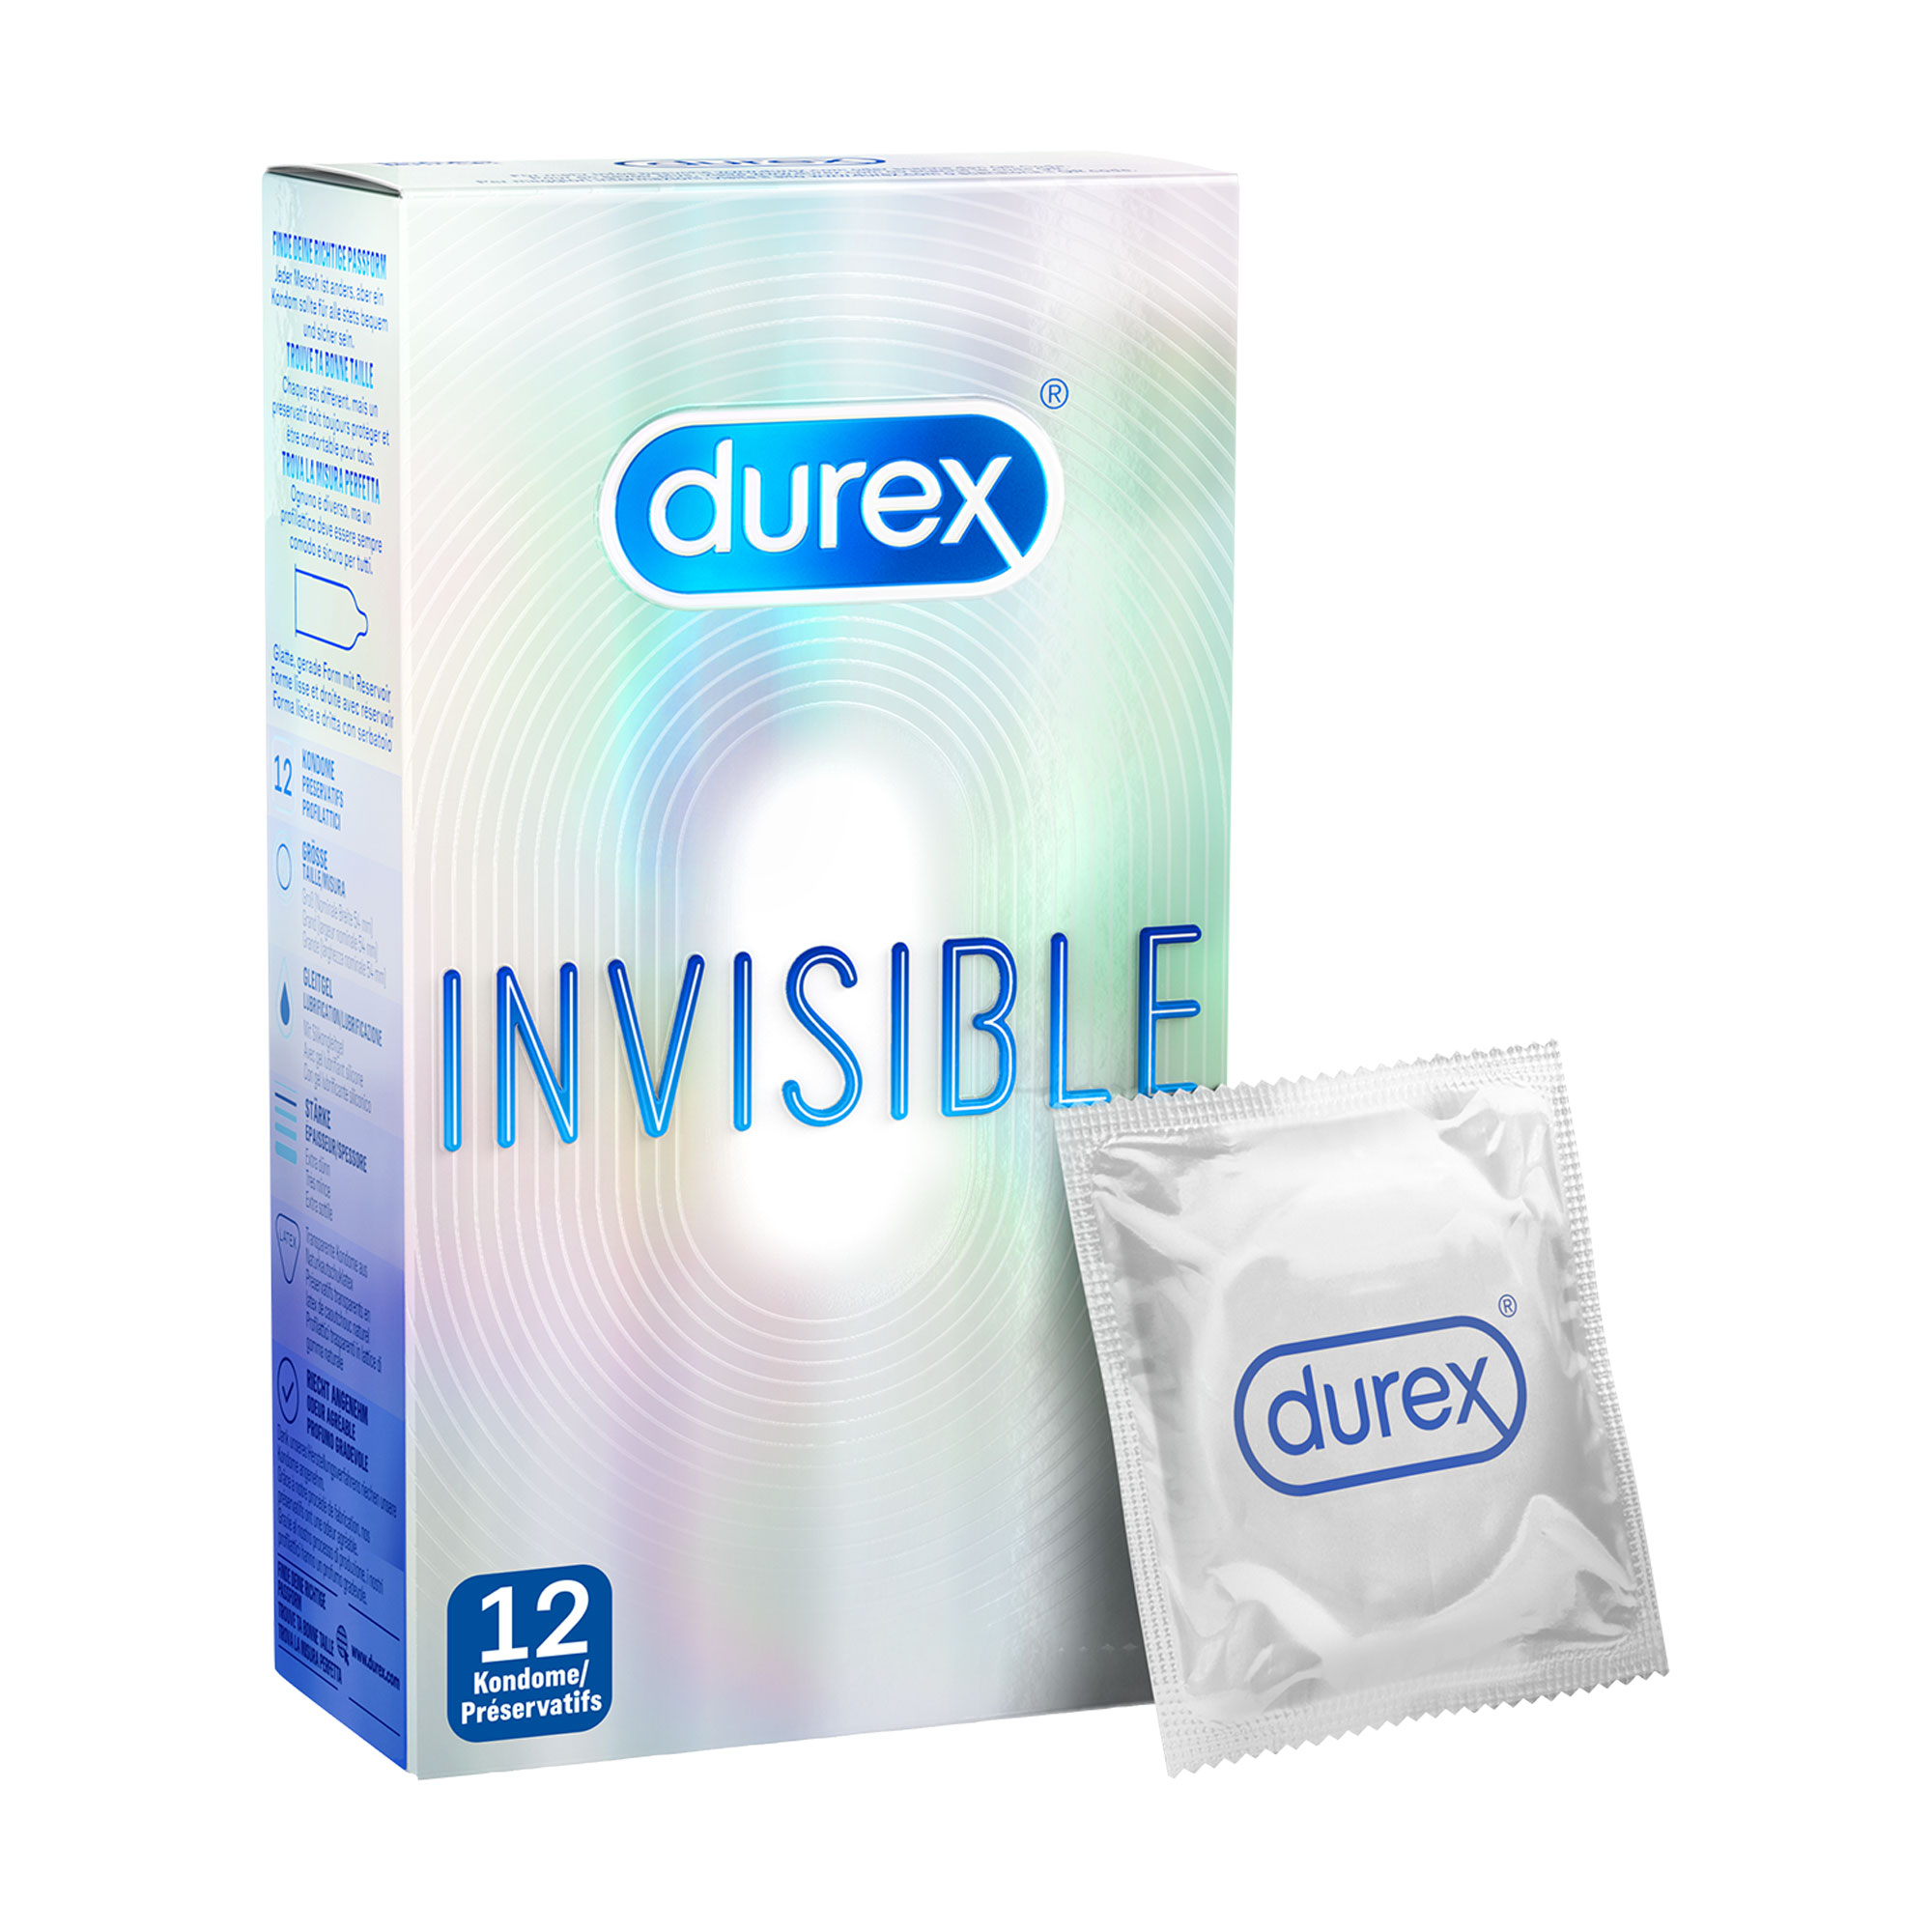 Kondome extra dünn für intensives Empfinden beim gemeinsamen Liebesspiel.